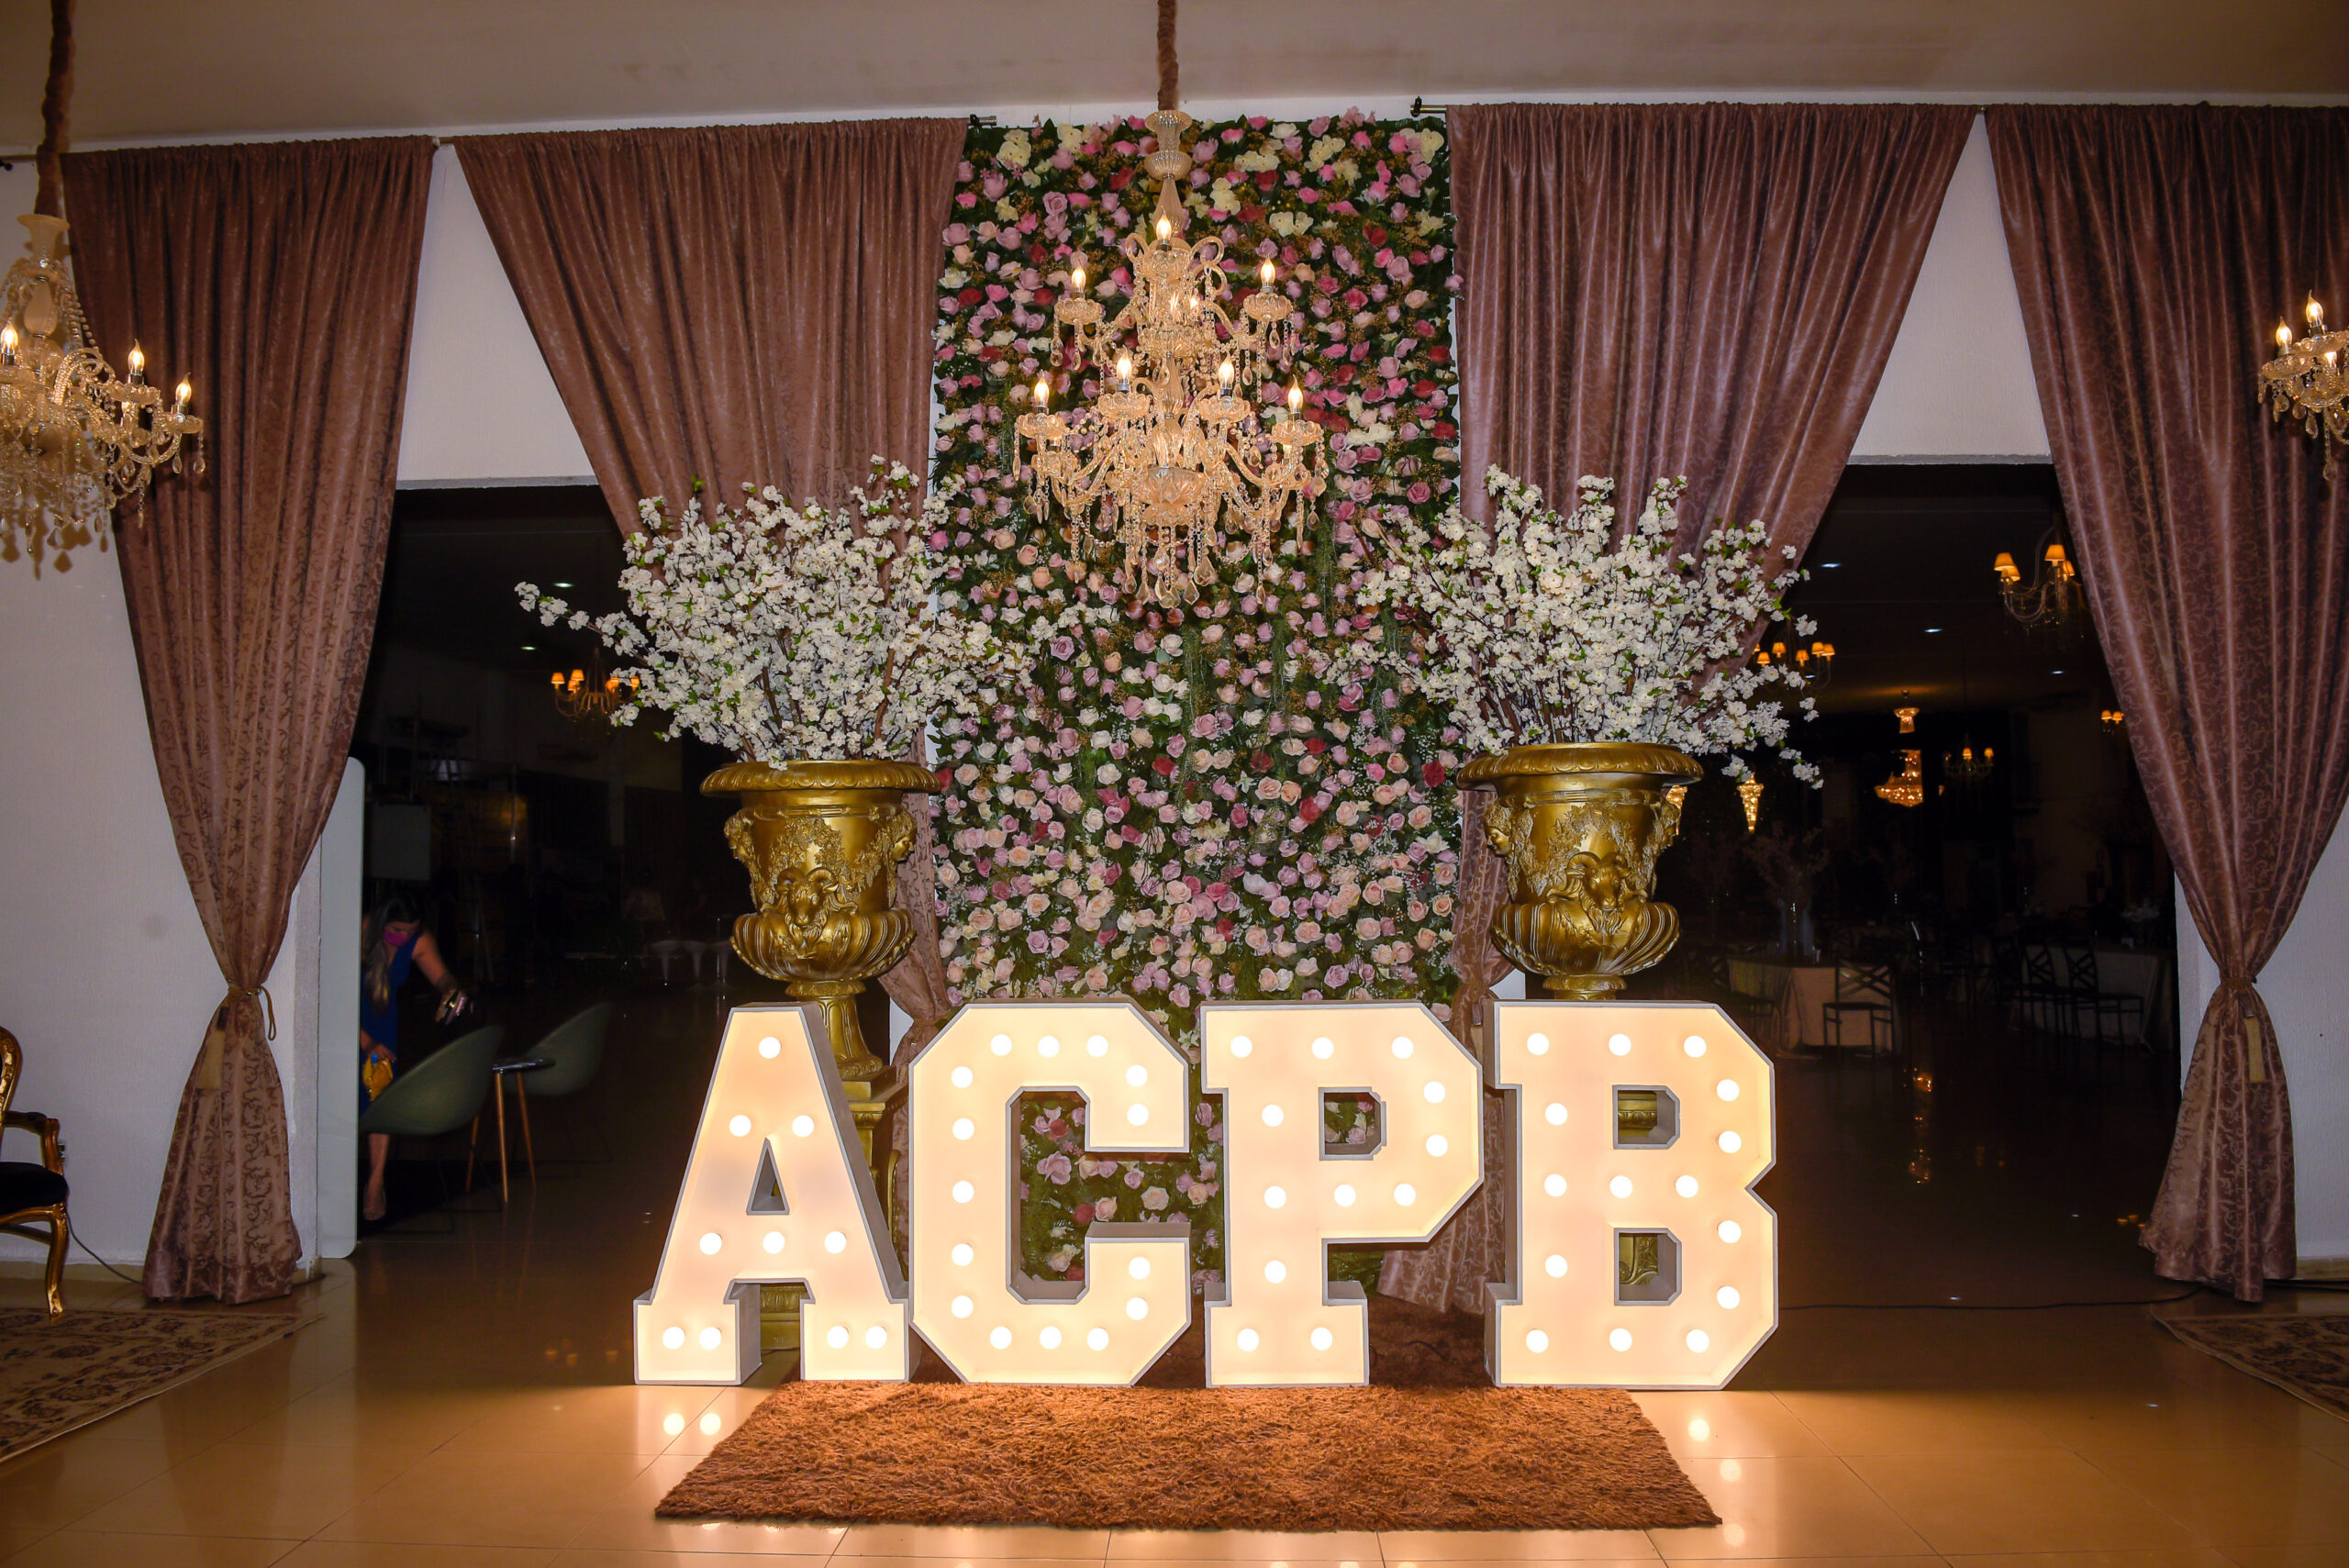 Associação Comercial da Paraíba comemora 147 anos com festa, homenagens e novas parcerias – ACPB